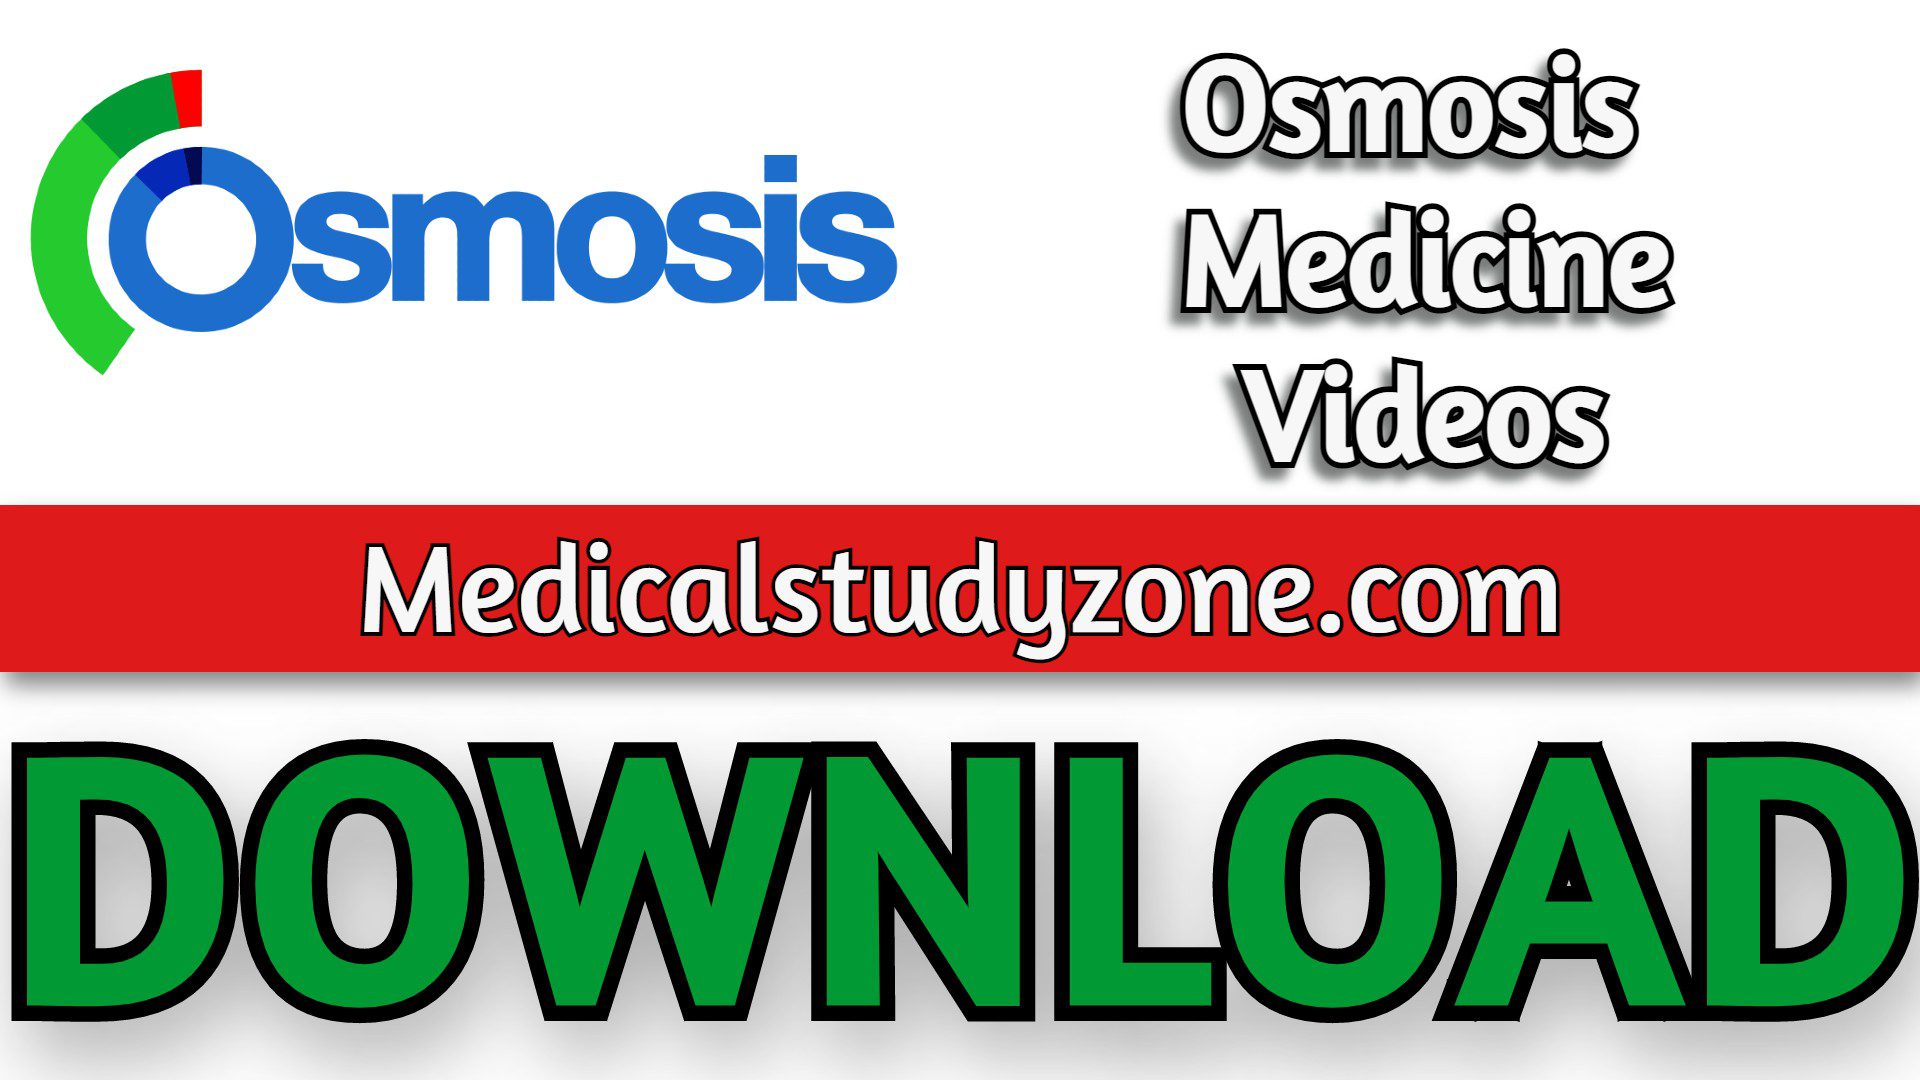 Osmosis Medicine Videos 2021 Free Download